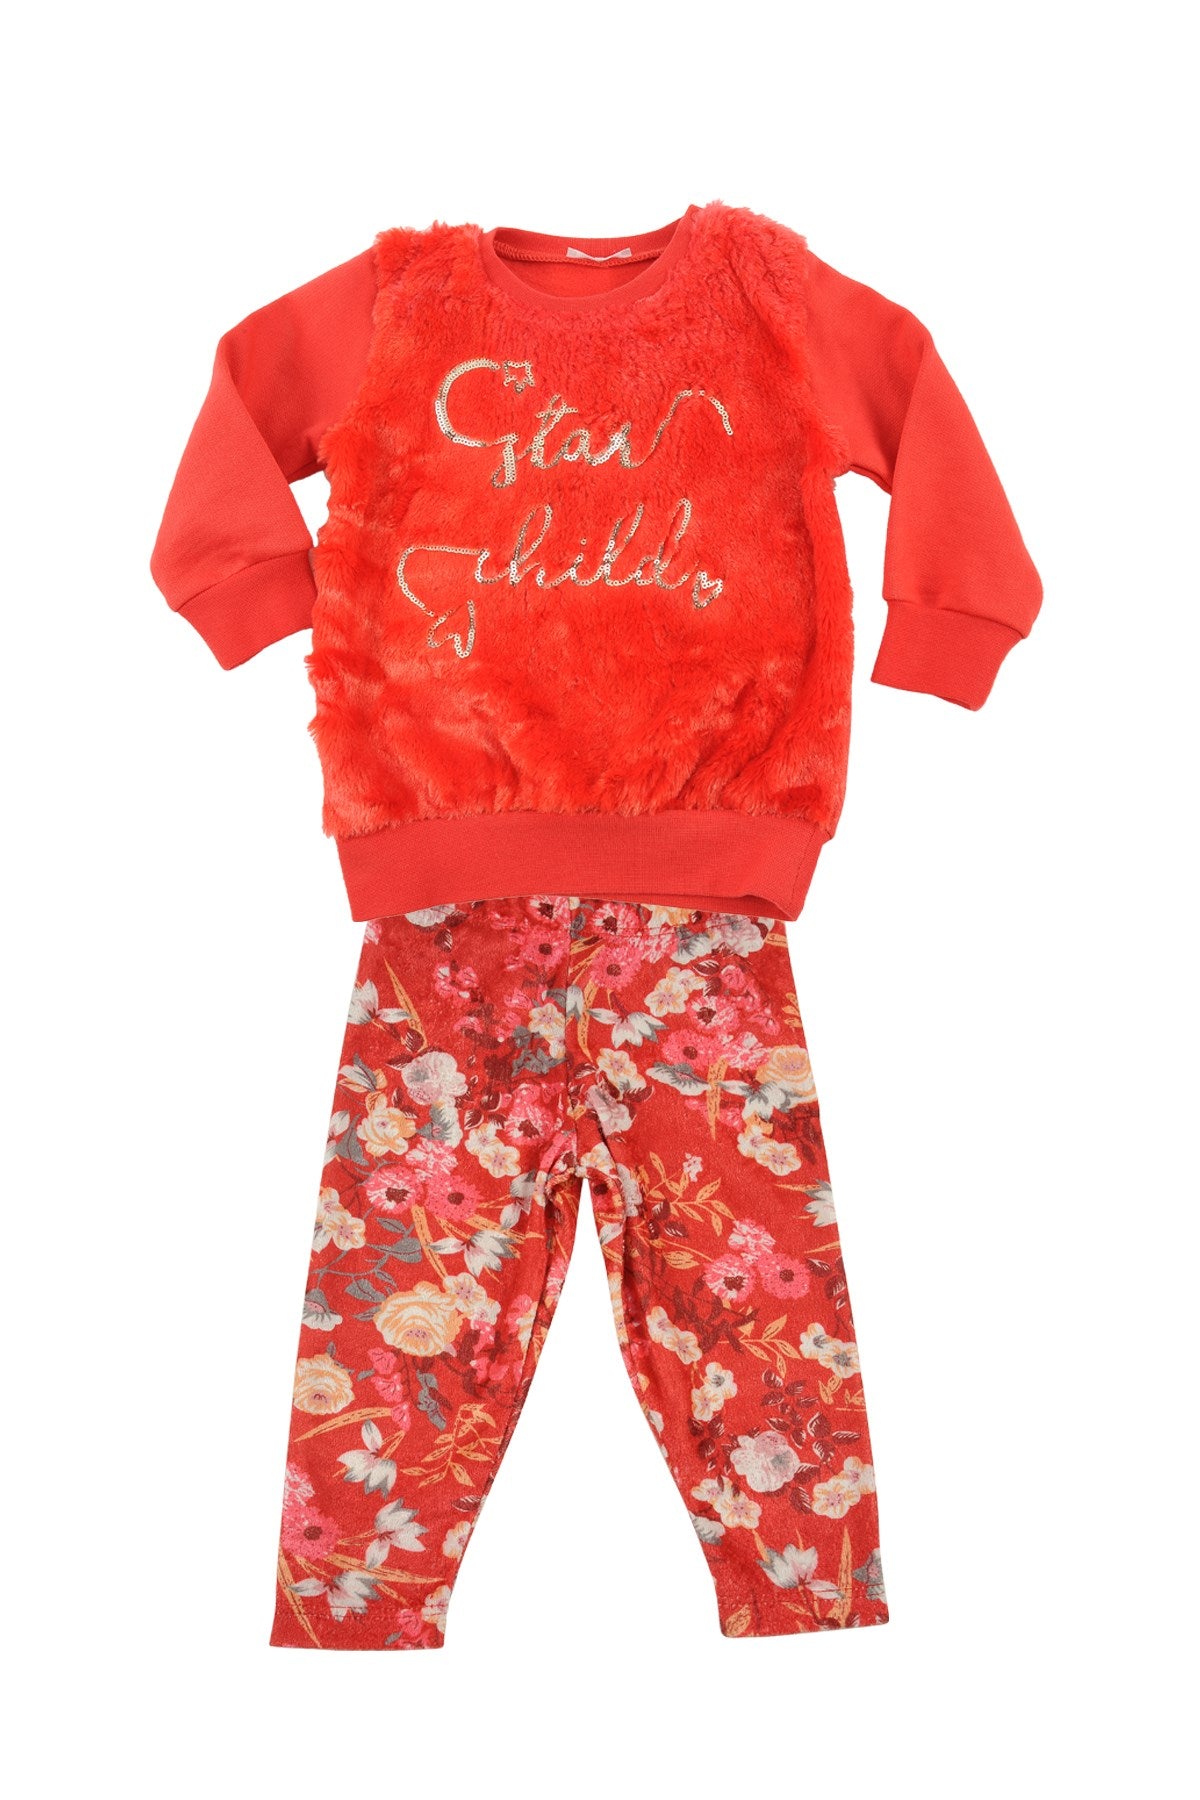 Kız Bebek Kırmızı Peluş Sweatshirt ve Çiçekli Tayt Takım (6ay-4yaş)-0